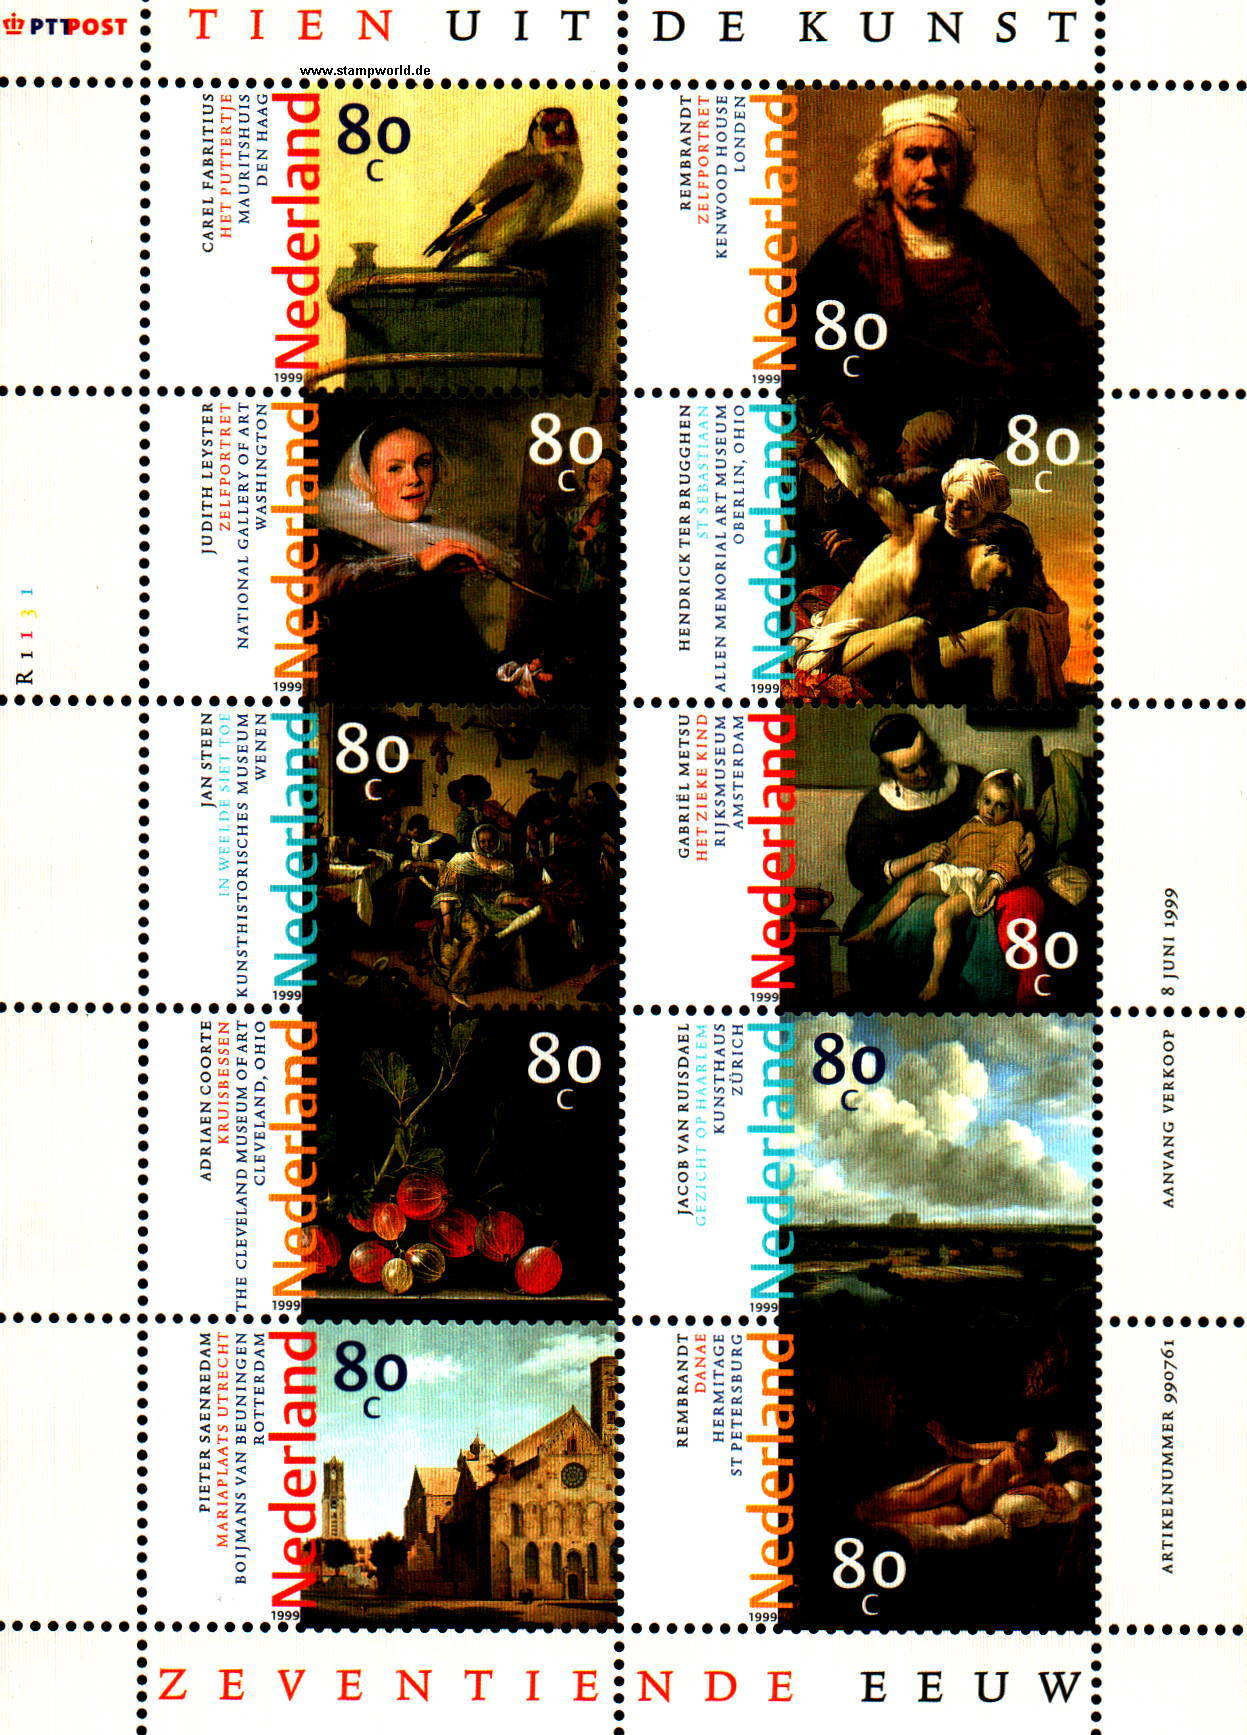 Briefmarken/Stamps Gemälde/Distelfink/Ente/StachelbeerenKirche/weibl. Akt (Rembrandt/Stehen...)